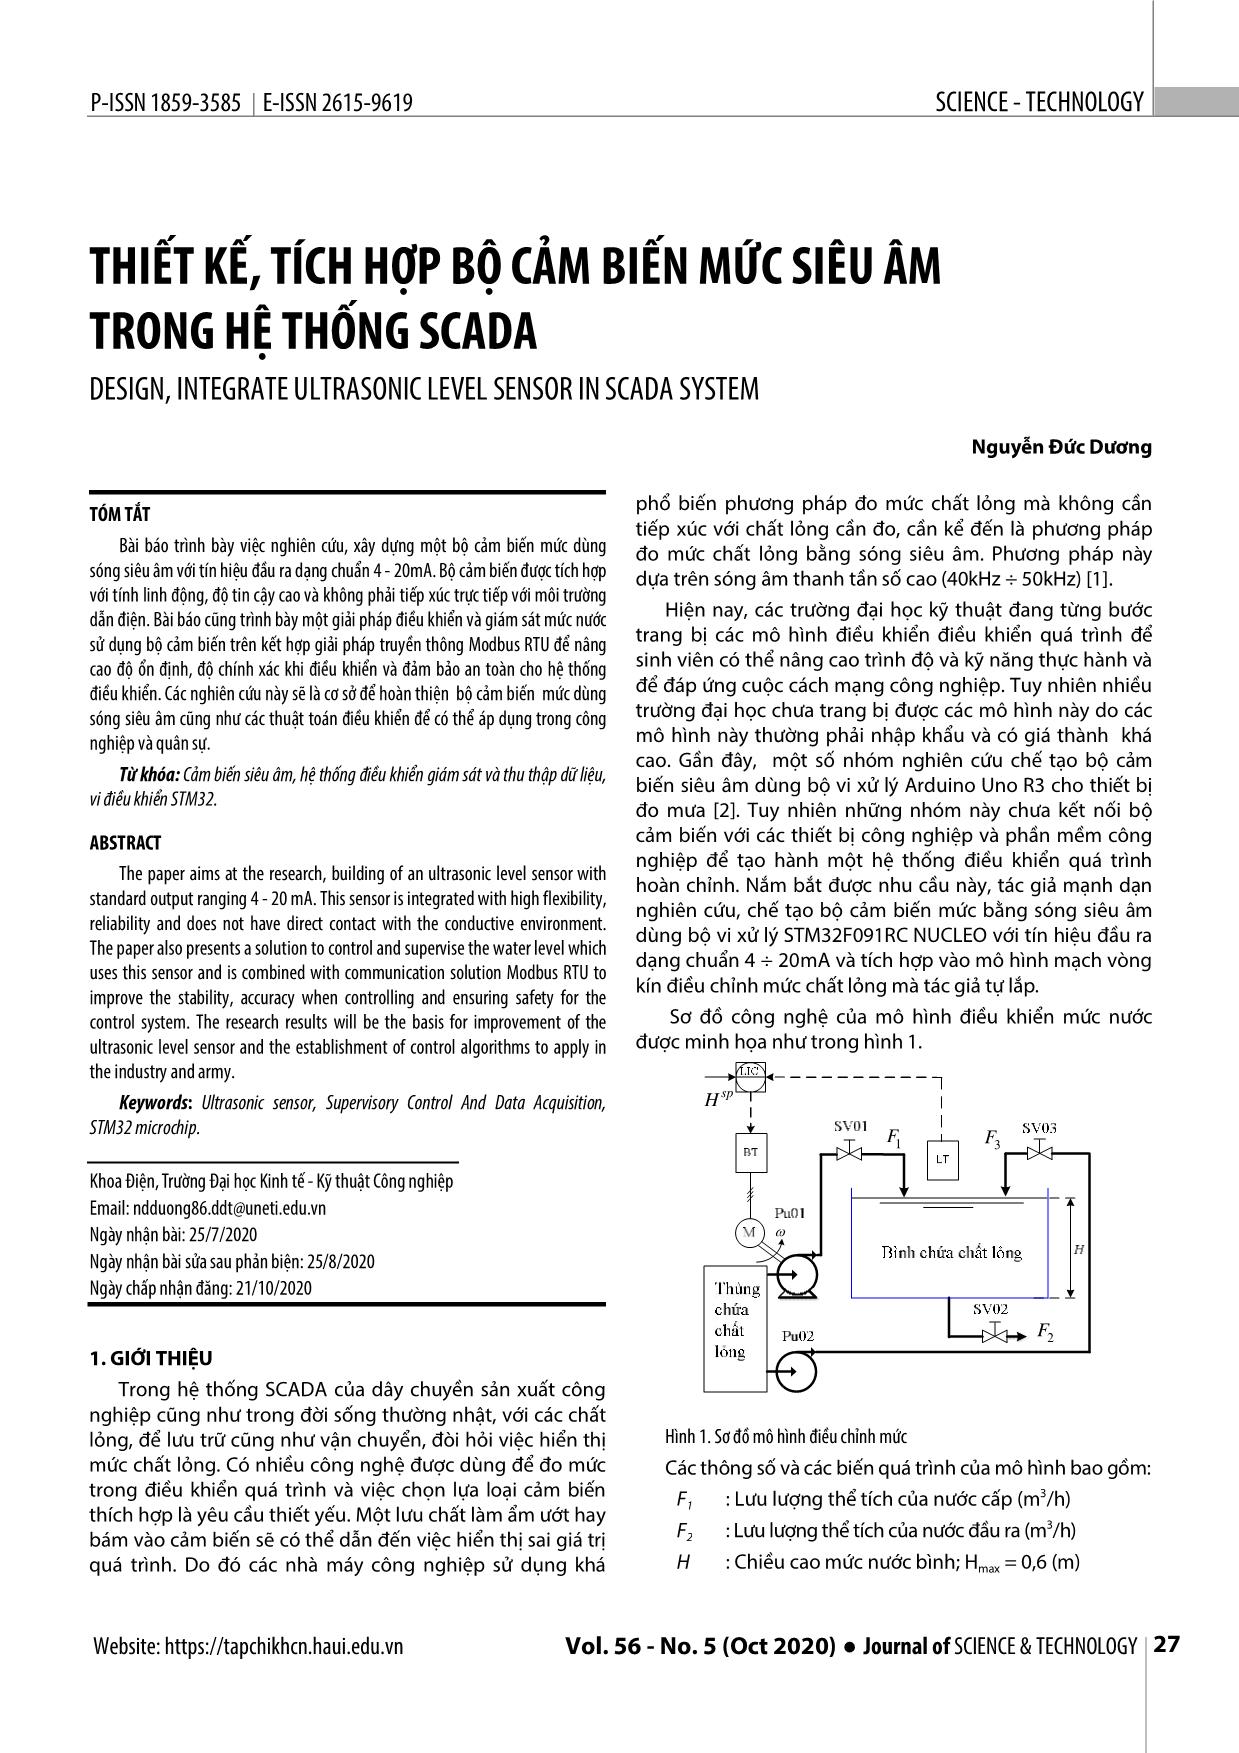 Thiết kế, tích hợp bộ cảm biến mức siêu âm trong hệ thống Scada trang 1